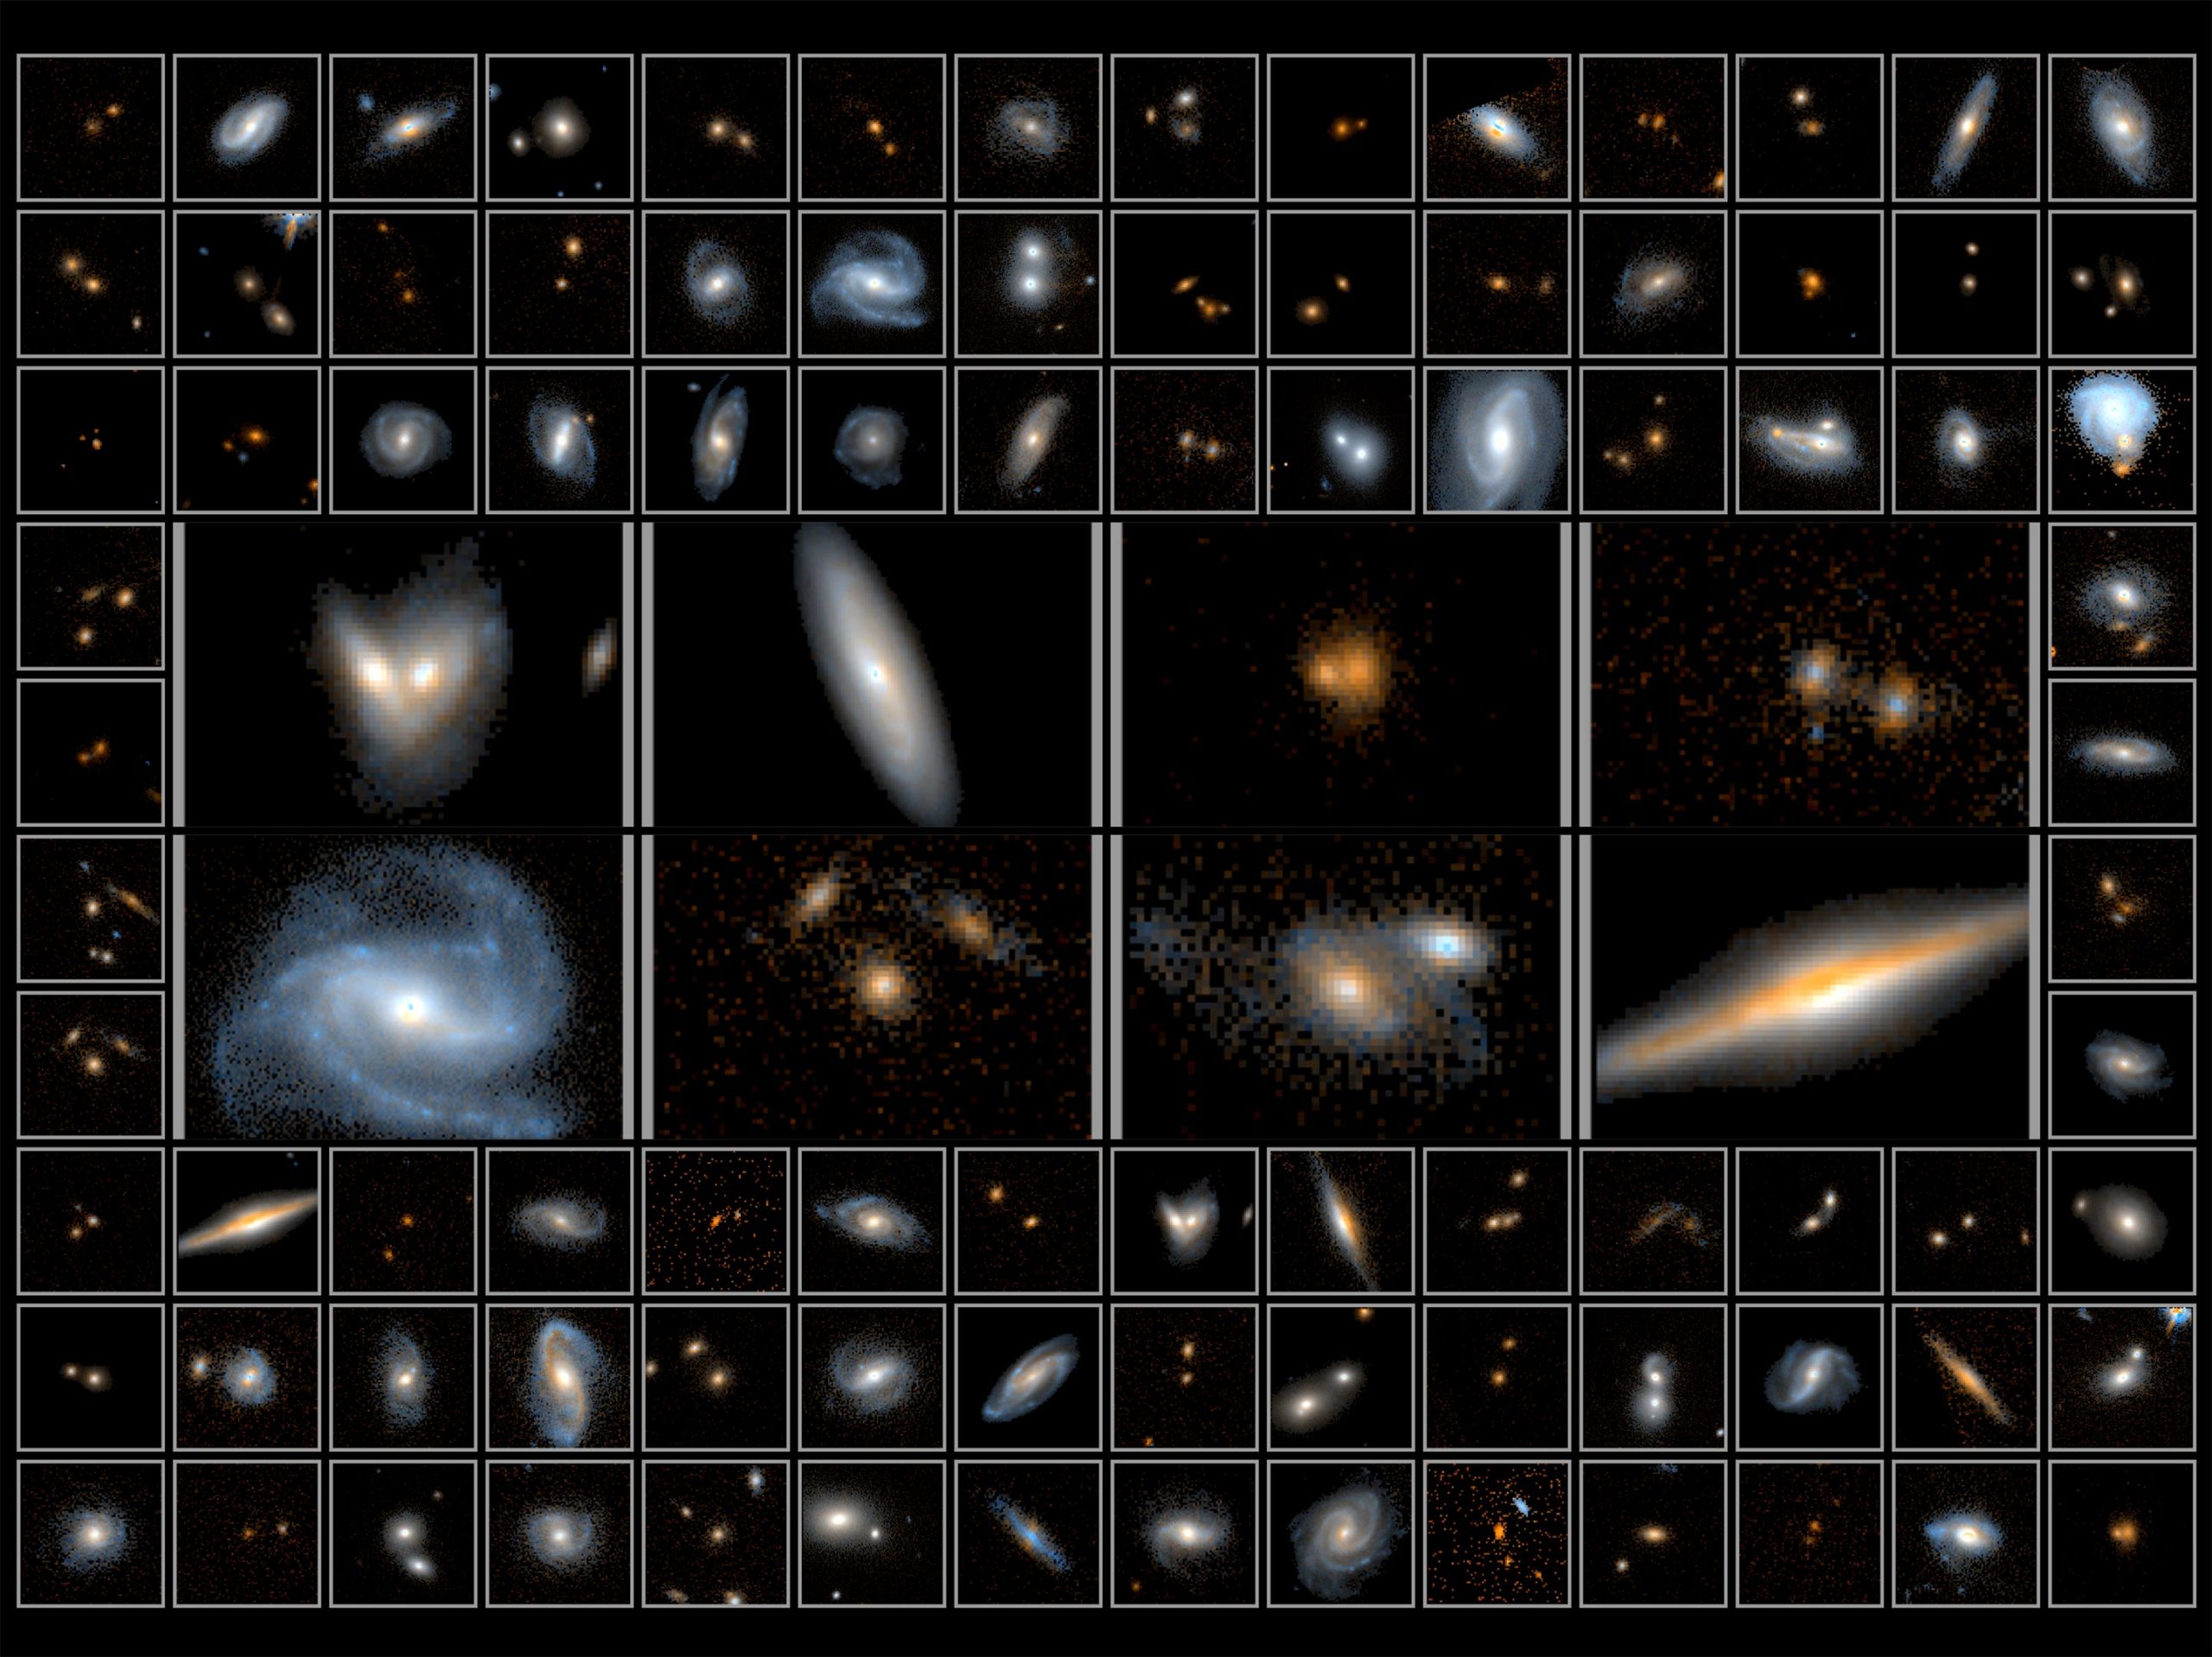 يلتقط هابل أكبر صورة قريبة من الأشعة تحت الحمراء للعثور على أندر المجرات في الكون